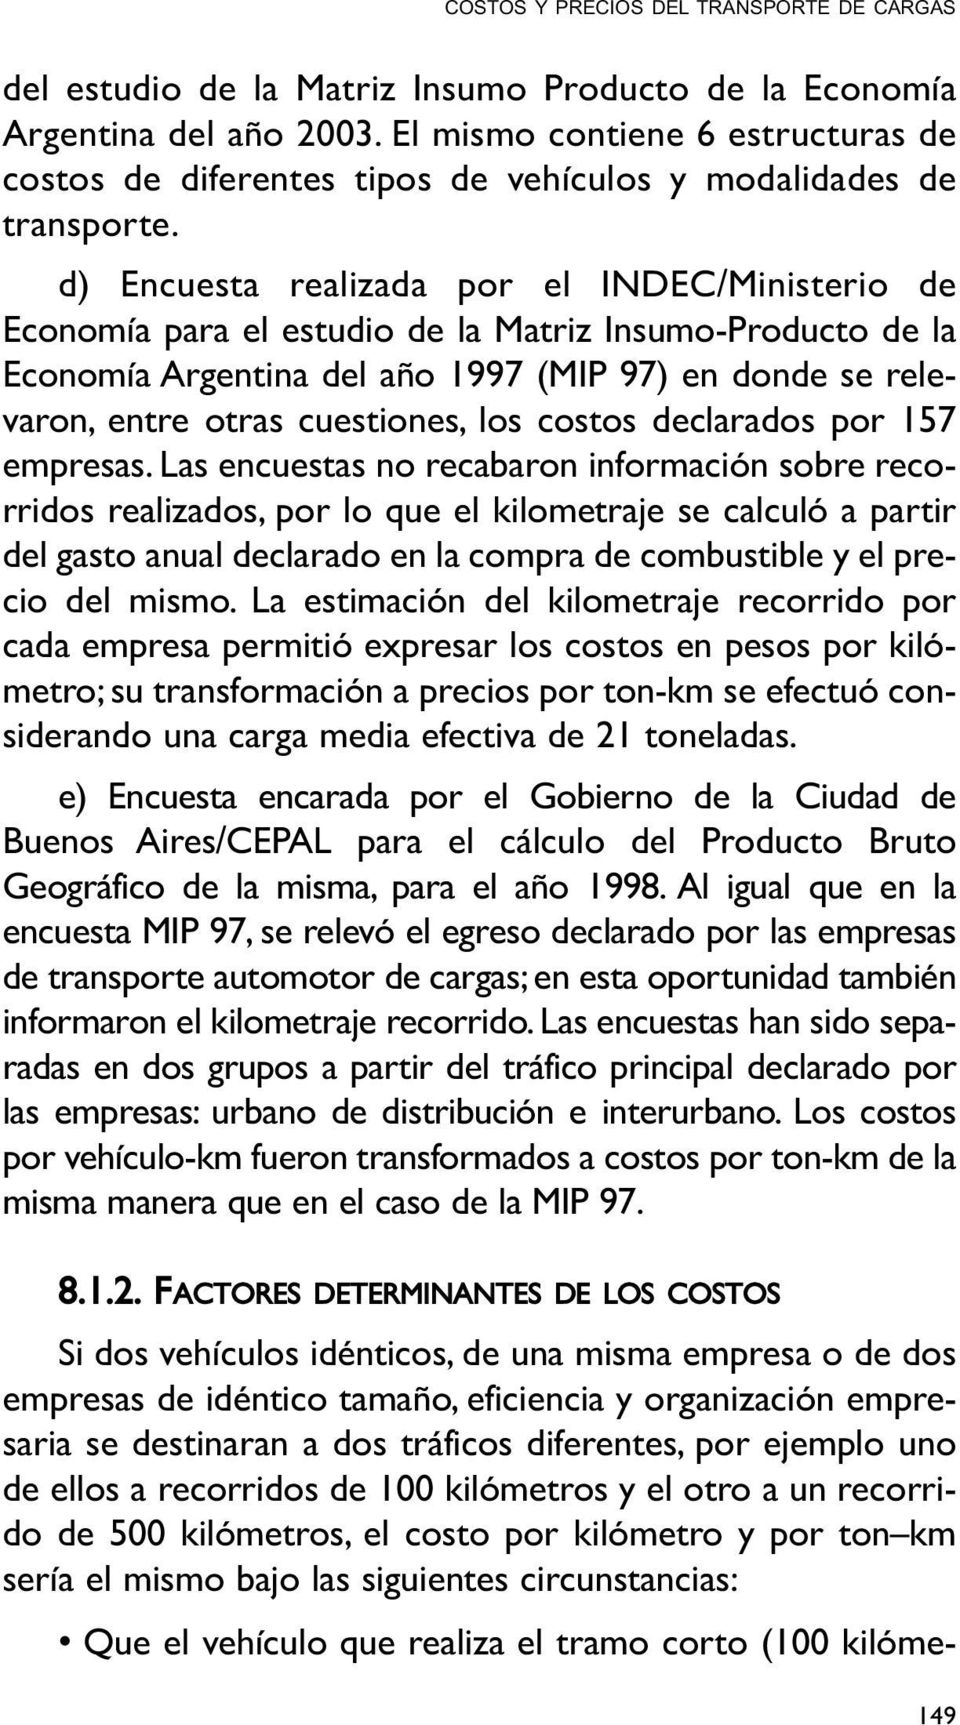 d) Encuesta realizada por el INDEC/Ministerio de Economía para el estudio de la Matriz Insumo-Producto de la Economía Argentina del año 1997 (MIP 97) en donde se relevaron, entre otras cuestiones,